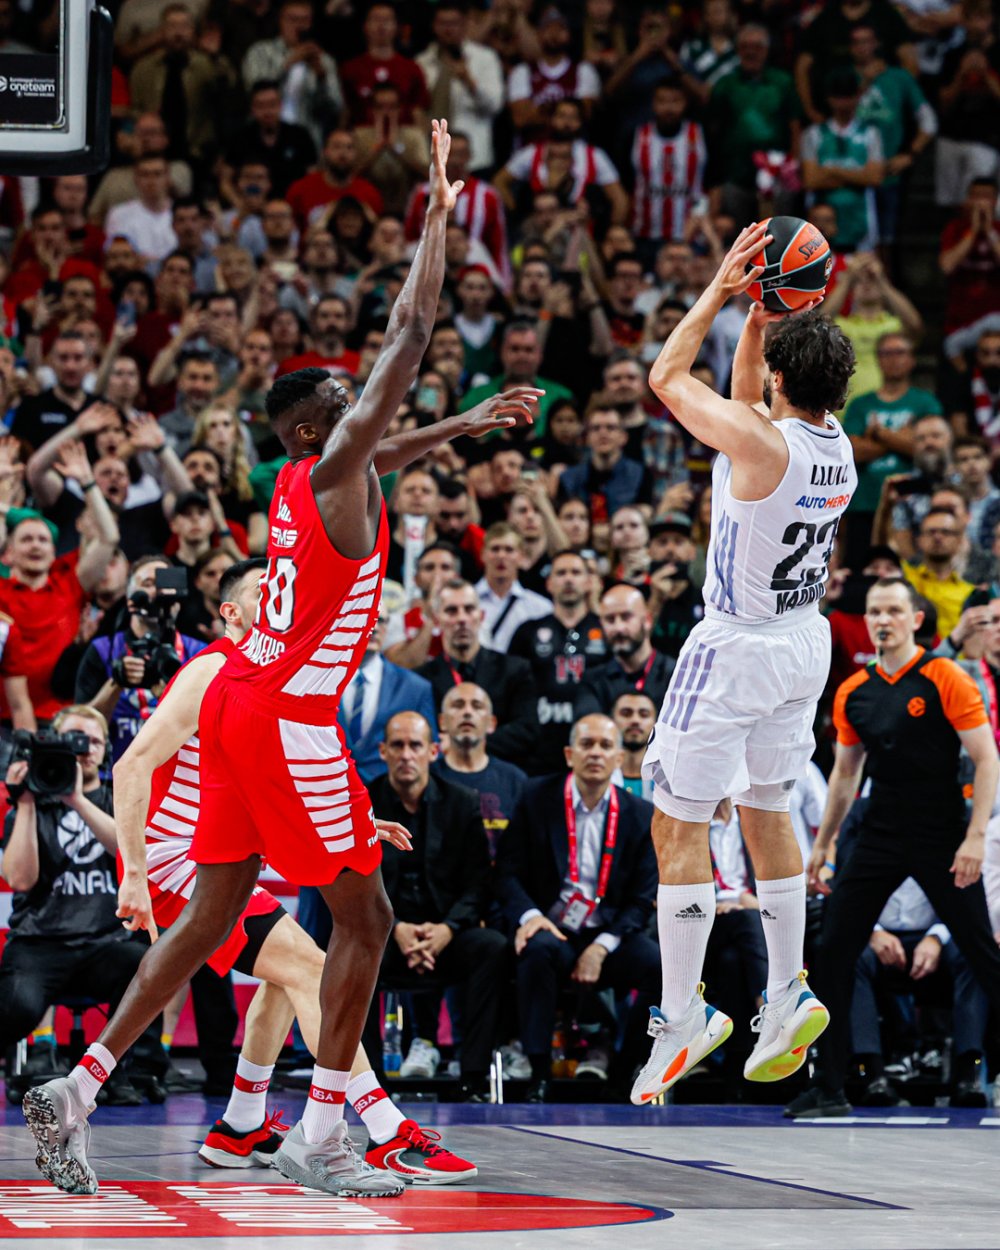 EuroLeague finali nefes kesti, şampiyon son saniyede belli oldu